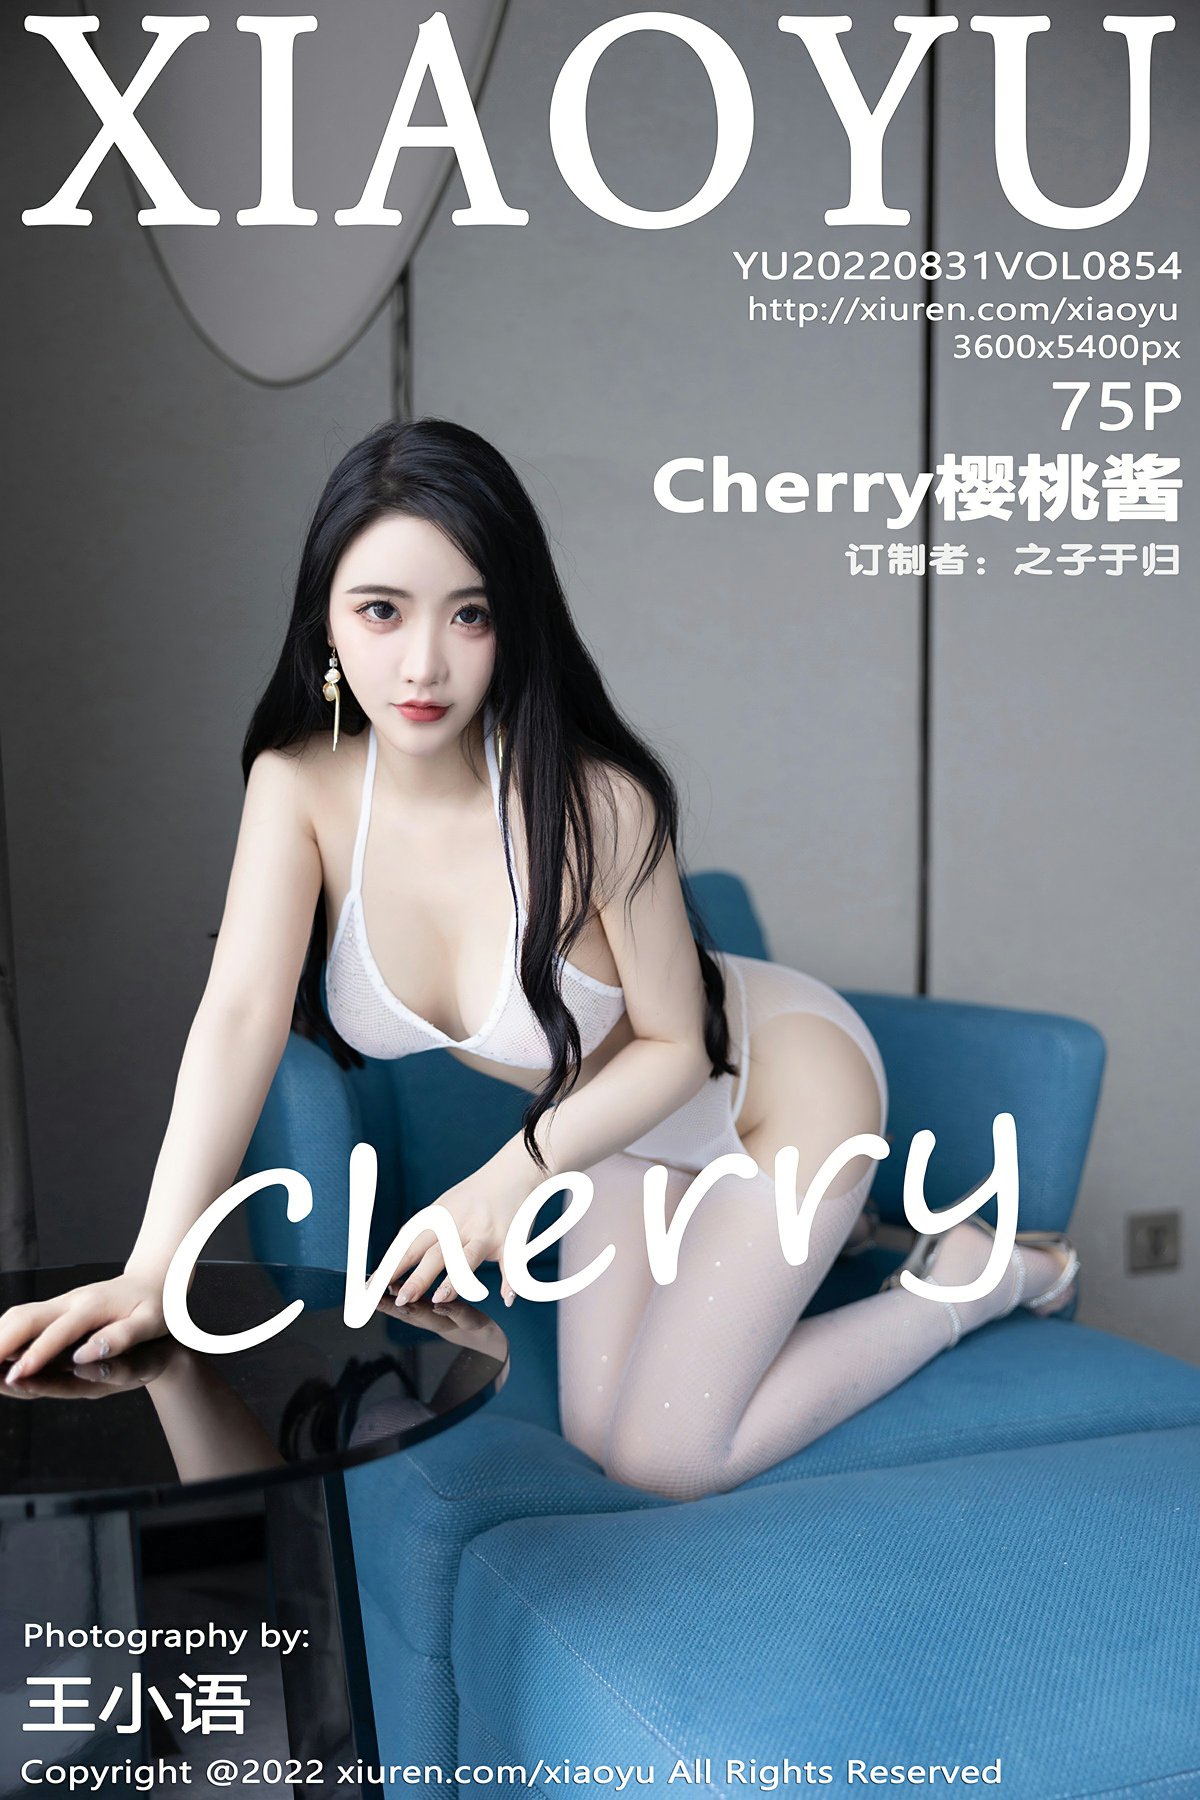 [XIAOYU语画界] 2022.08.31 VOL.854 Cherry樱桃酱